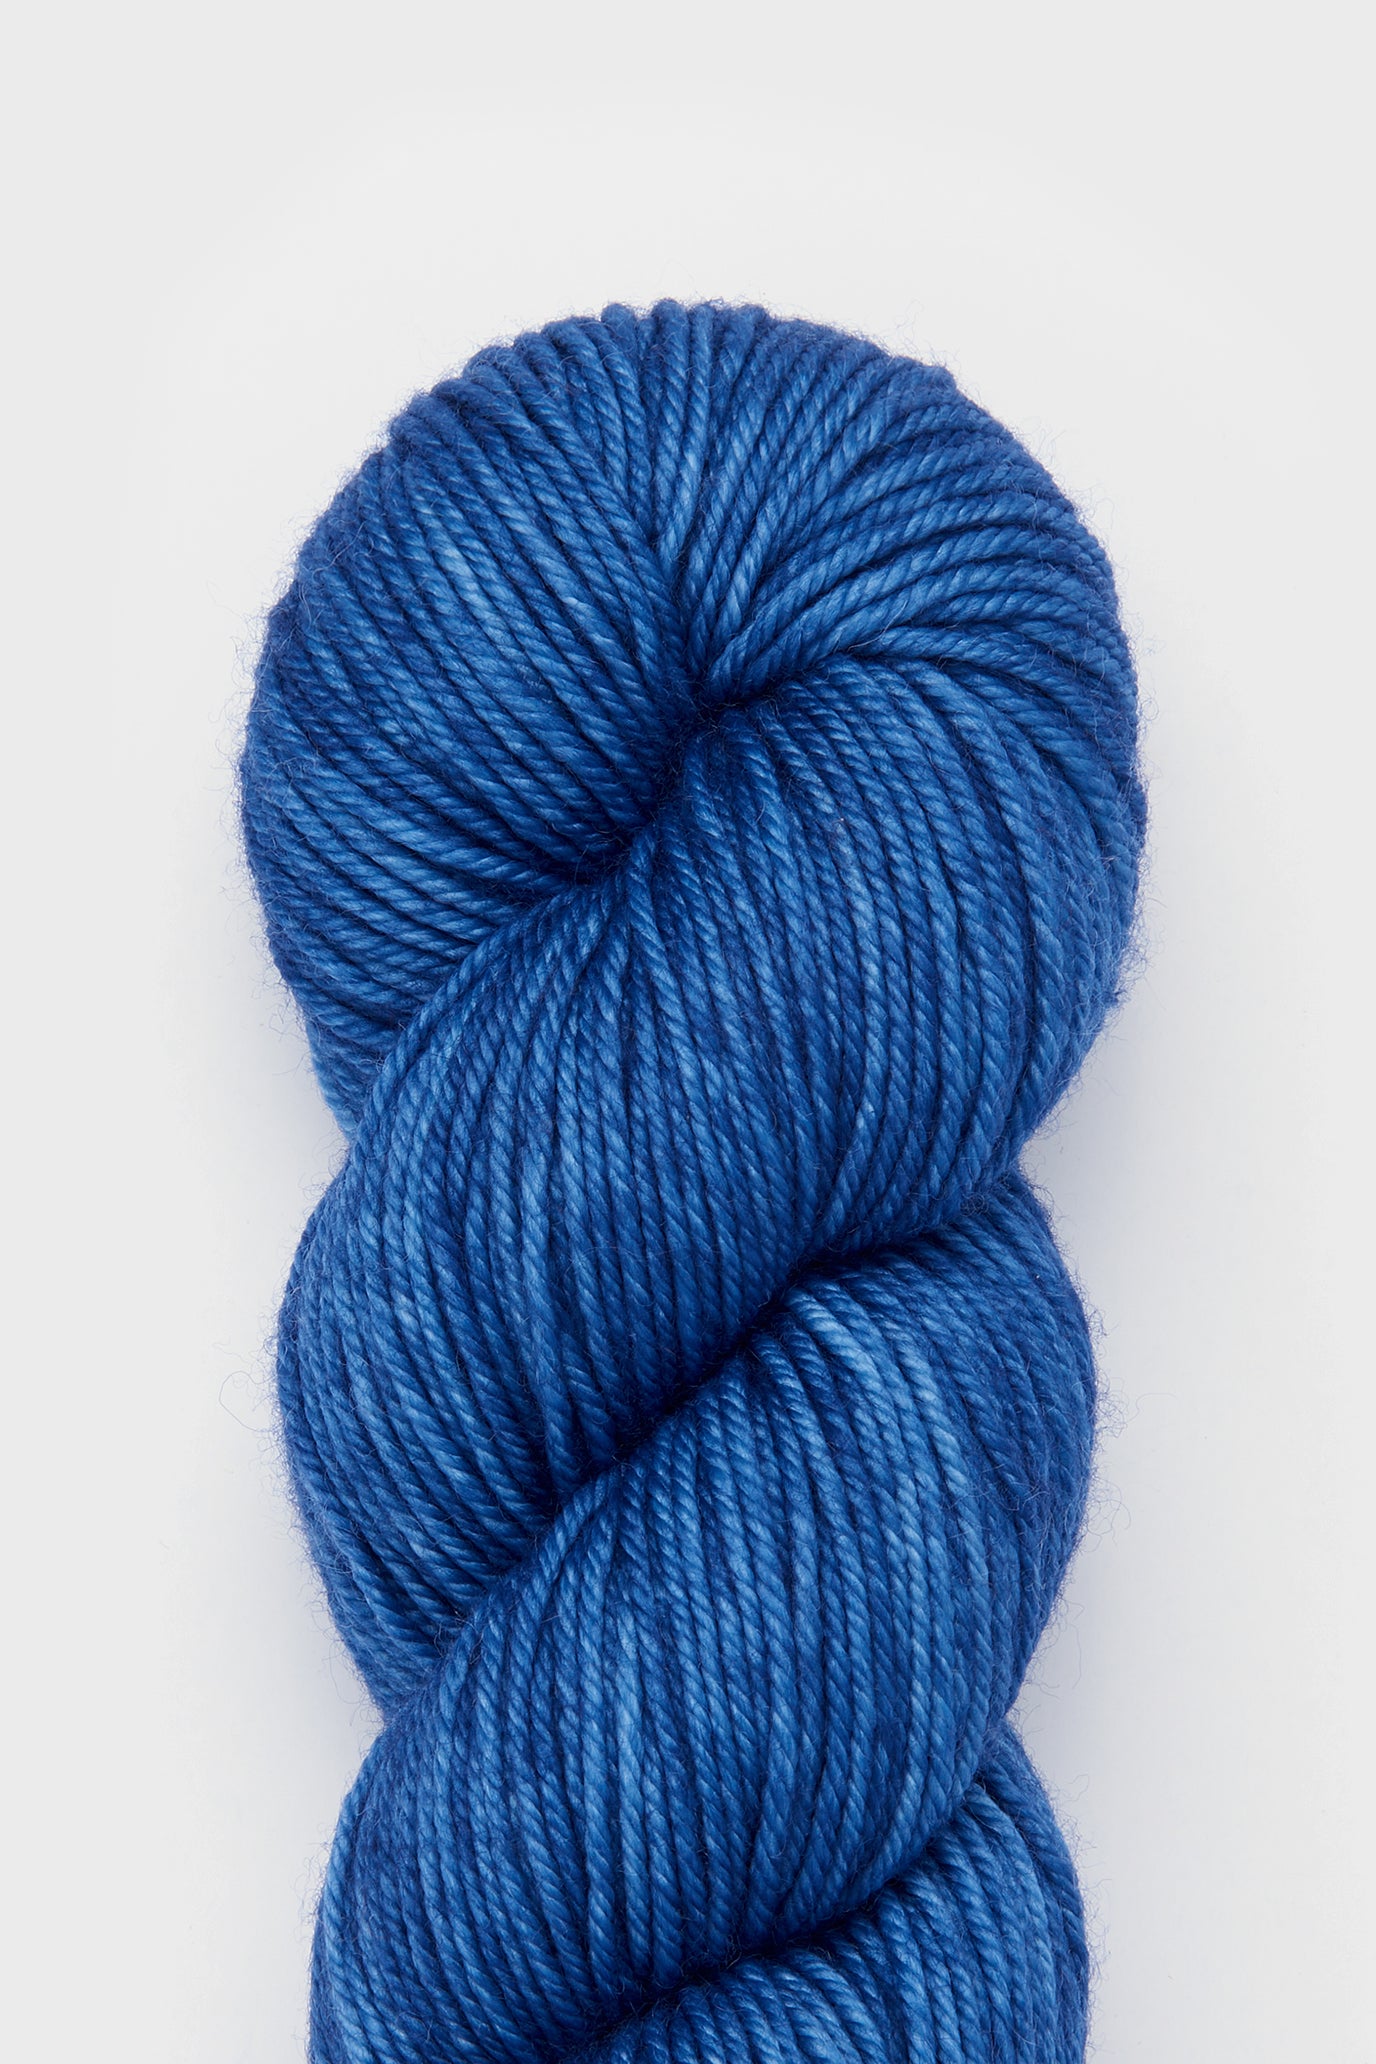 Yarn Skein - Blueberry